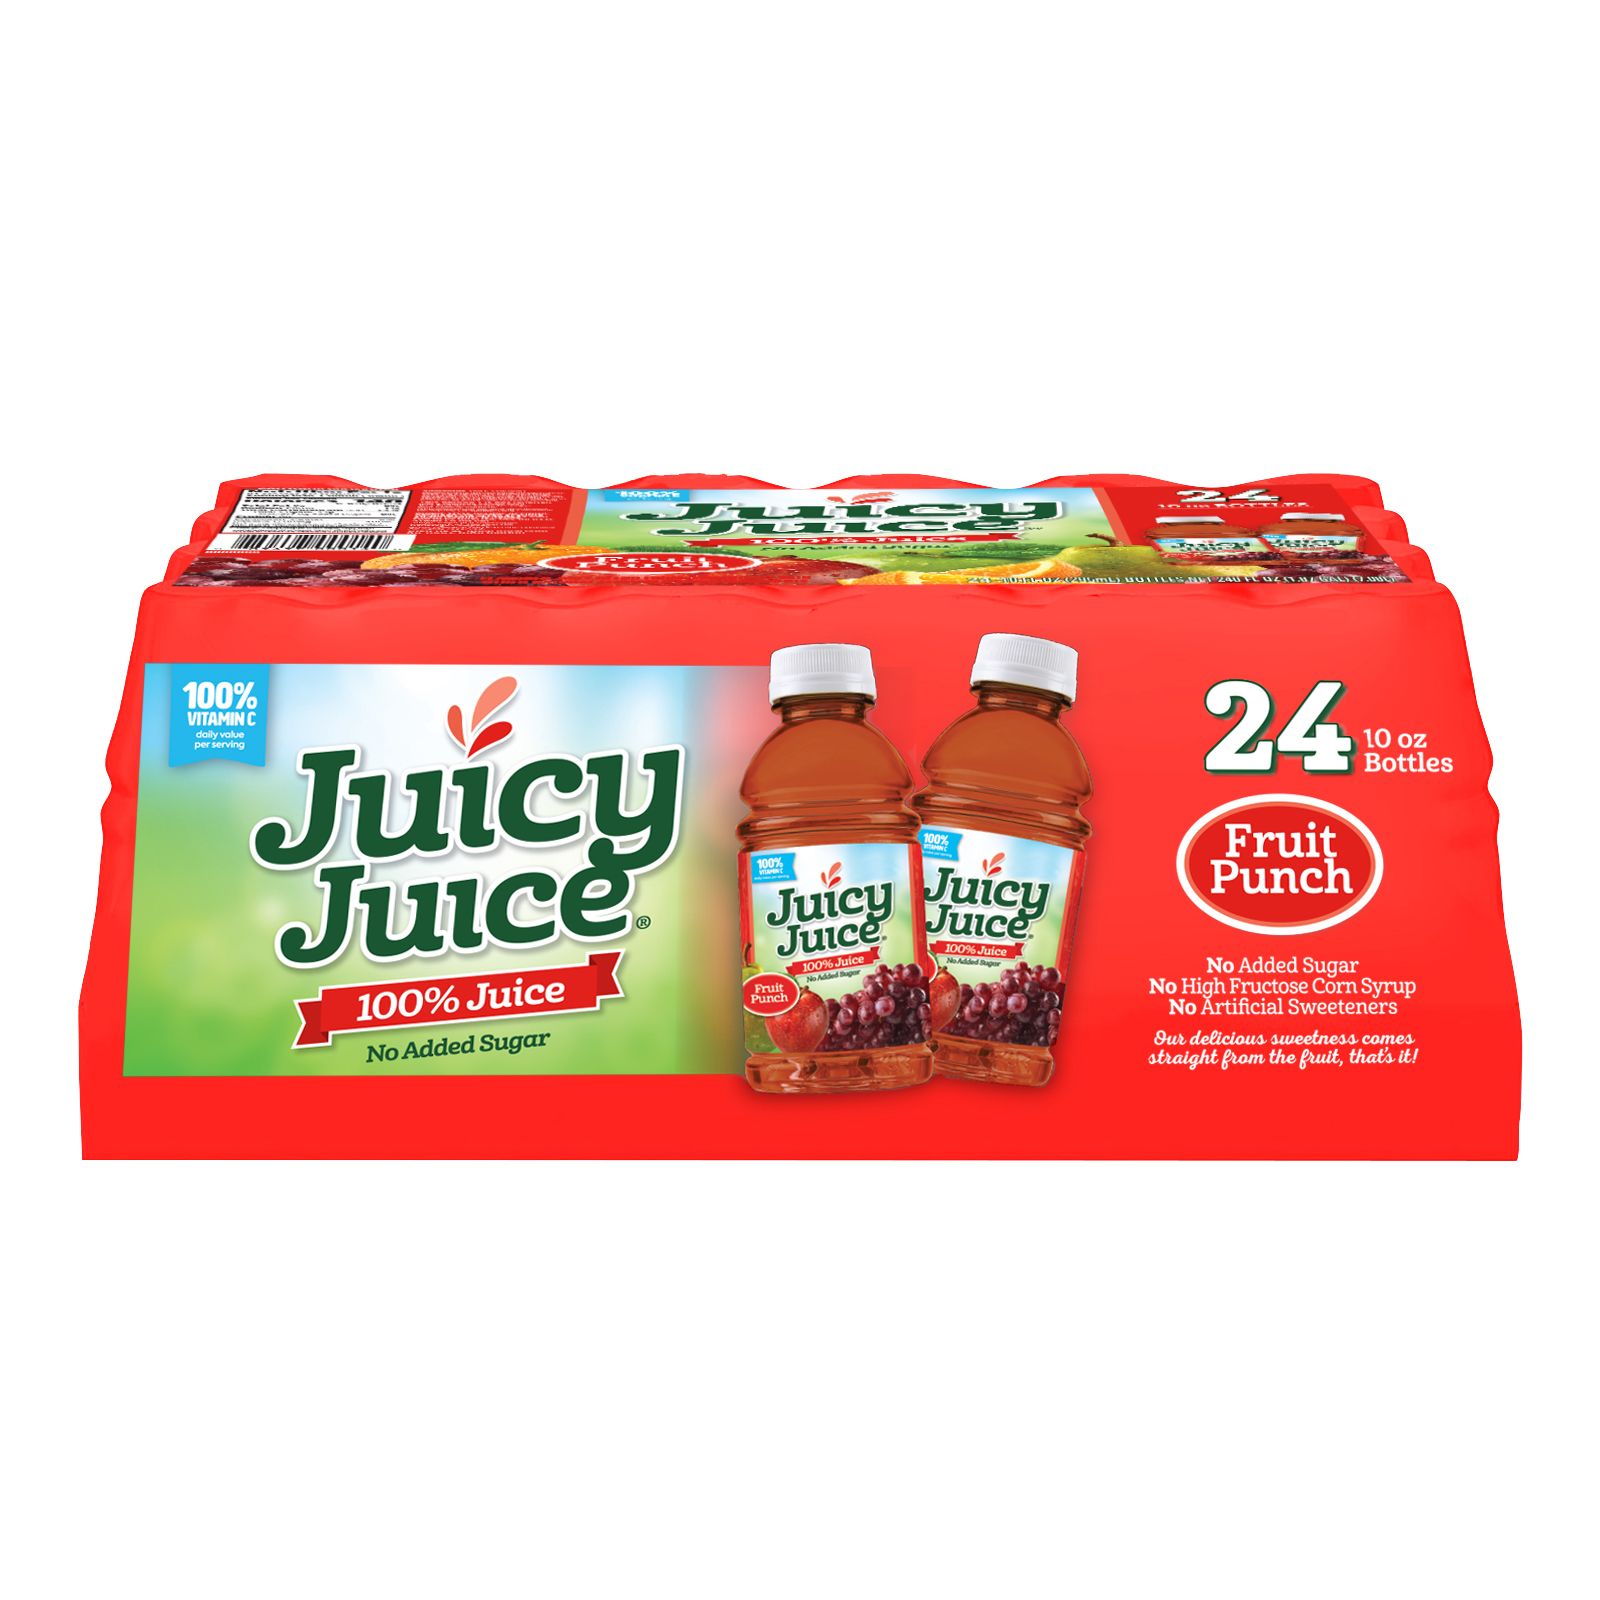 Dole - Dole, Fridge Pack Mixed Fruit in 100% Fruit Juice (15 oz), Shop